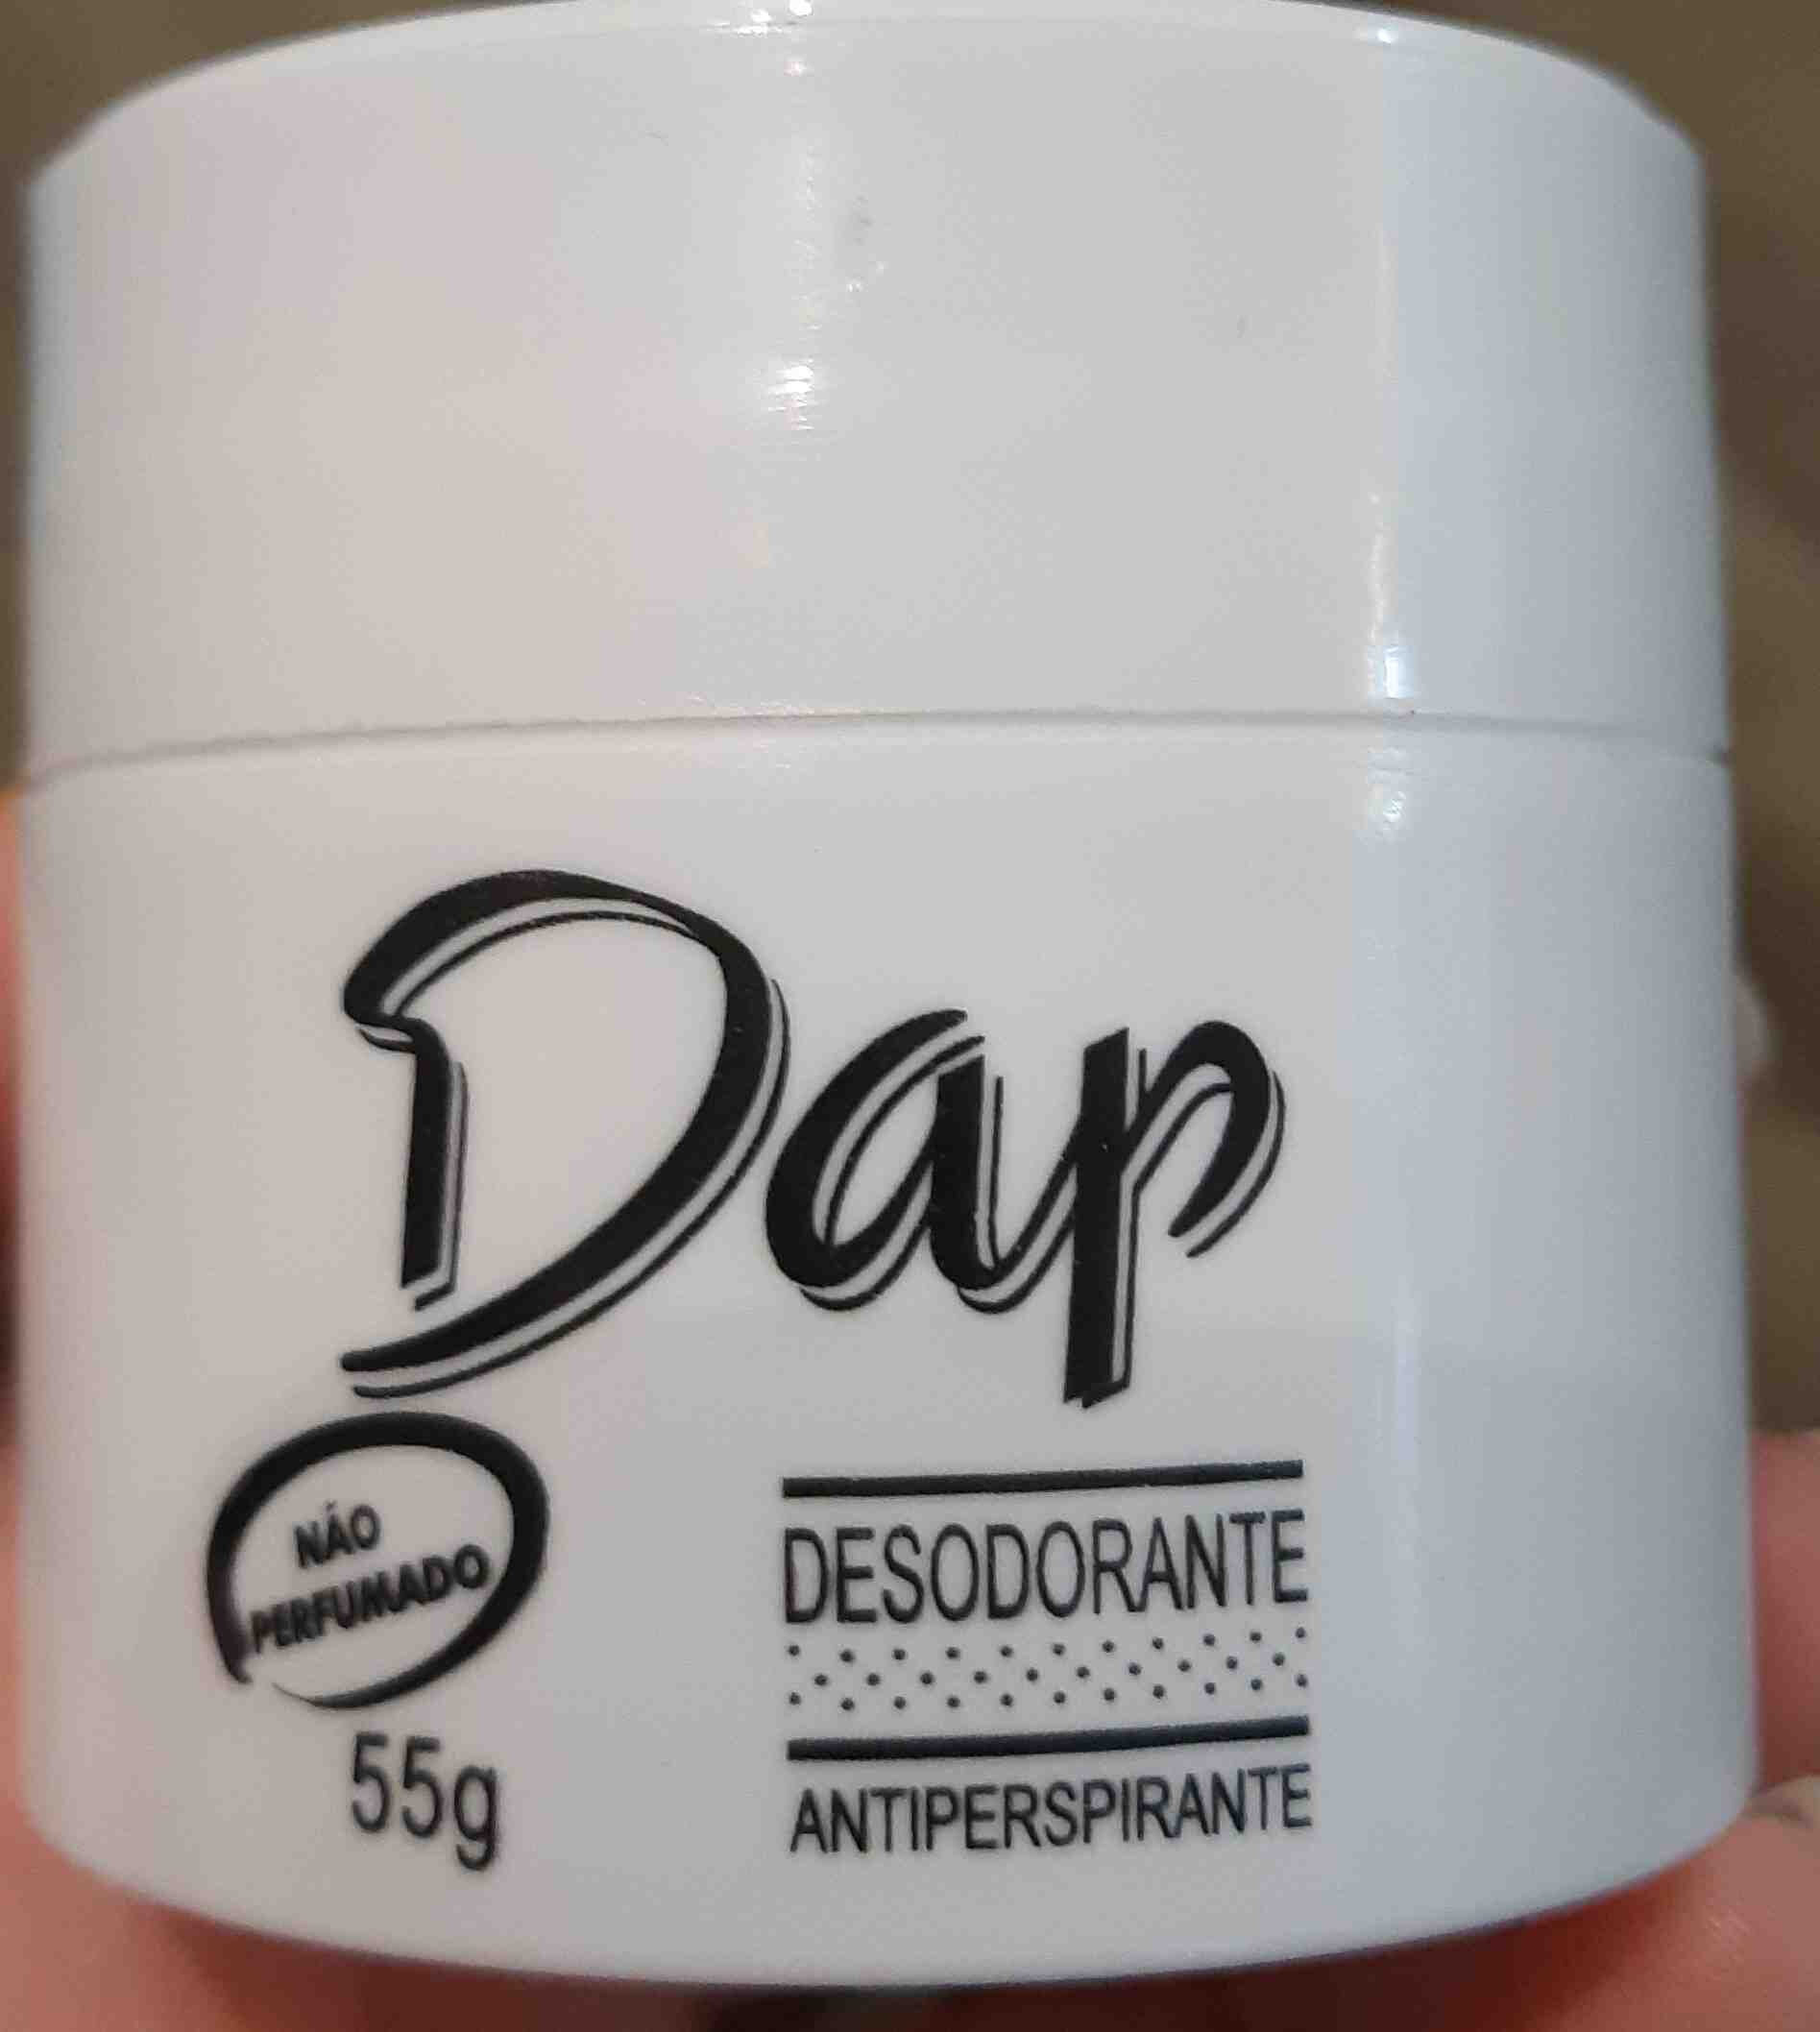 Dap desodorante - Product - en